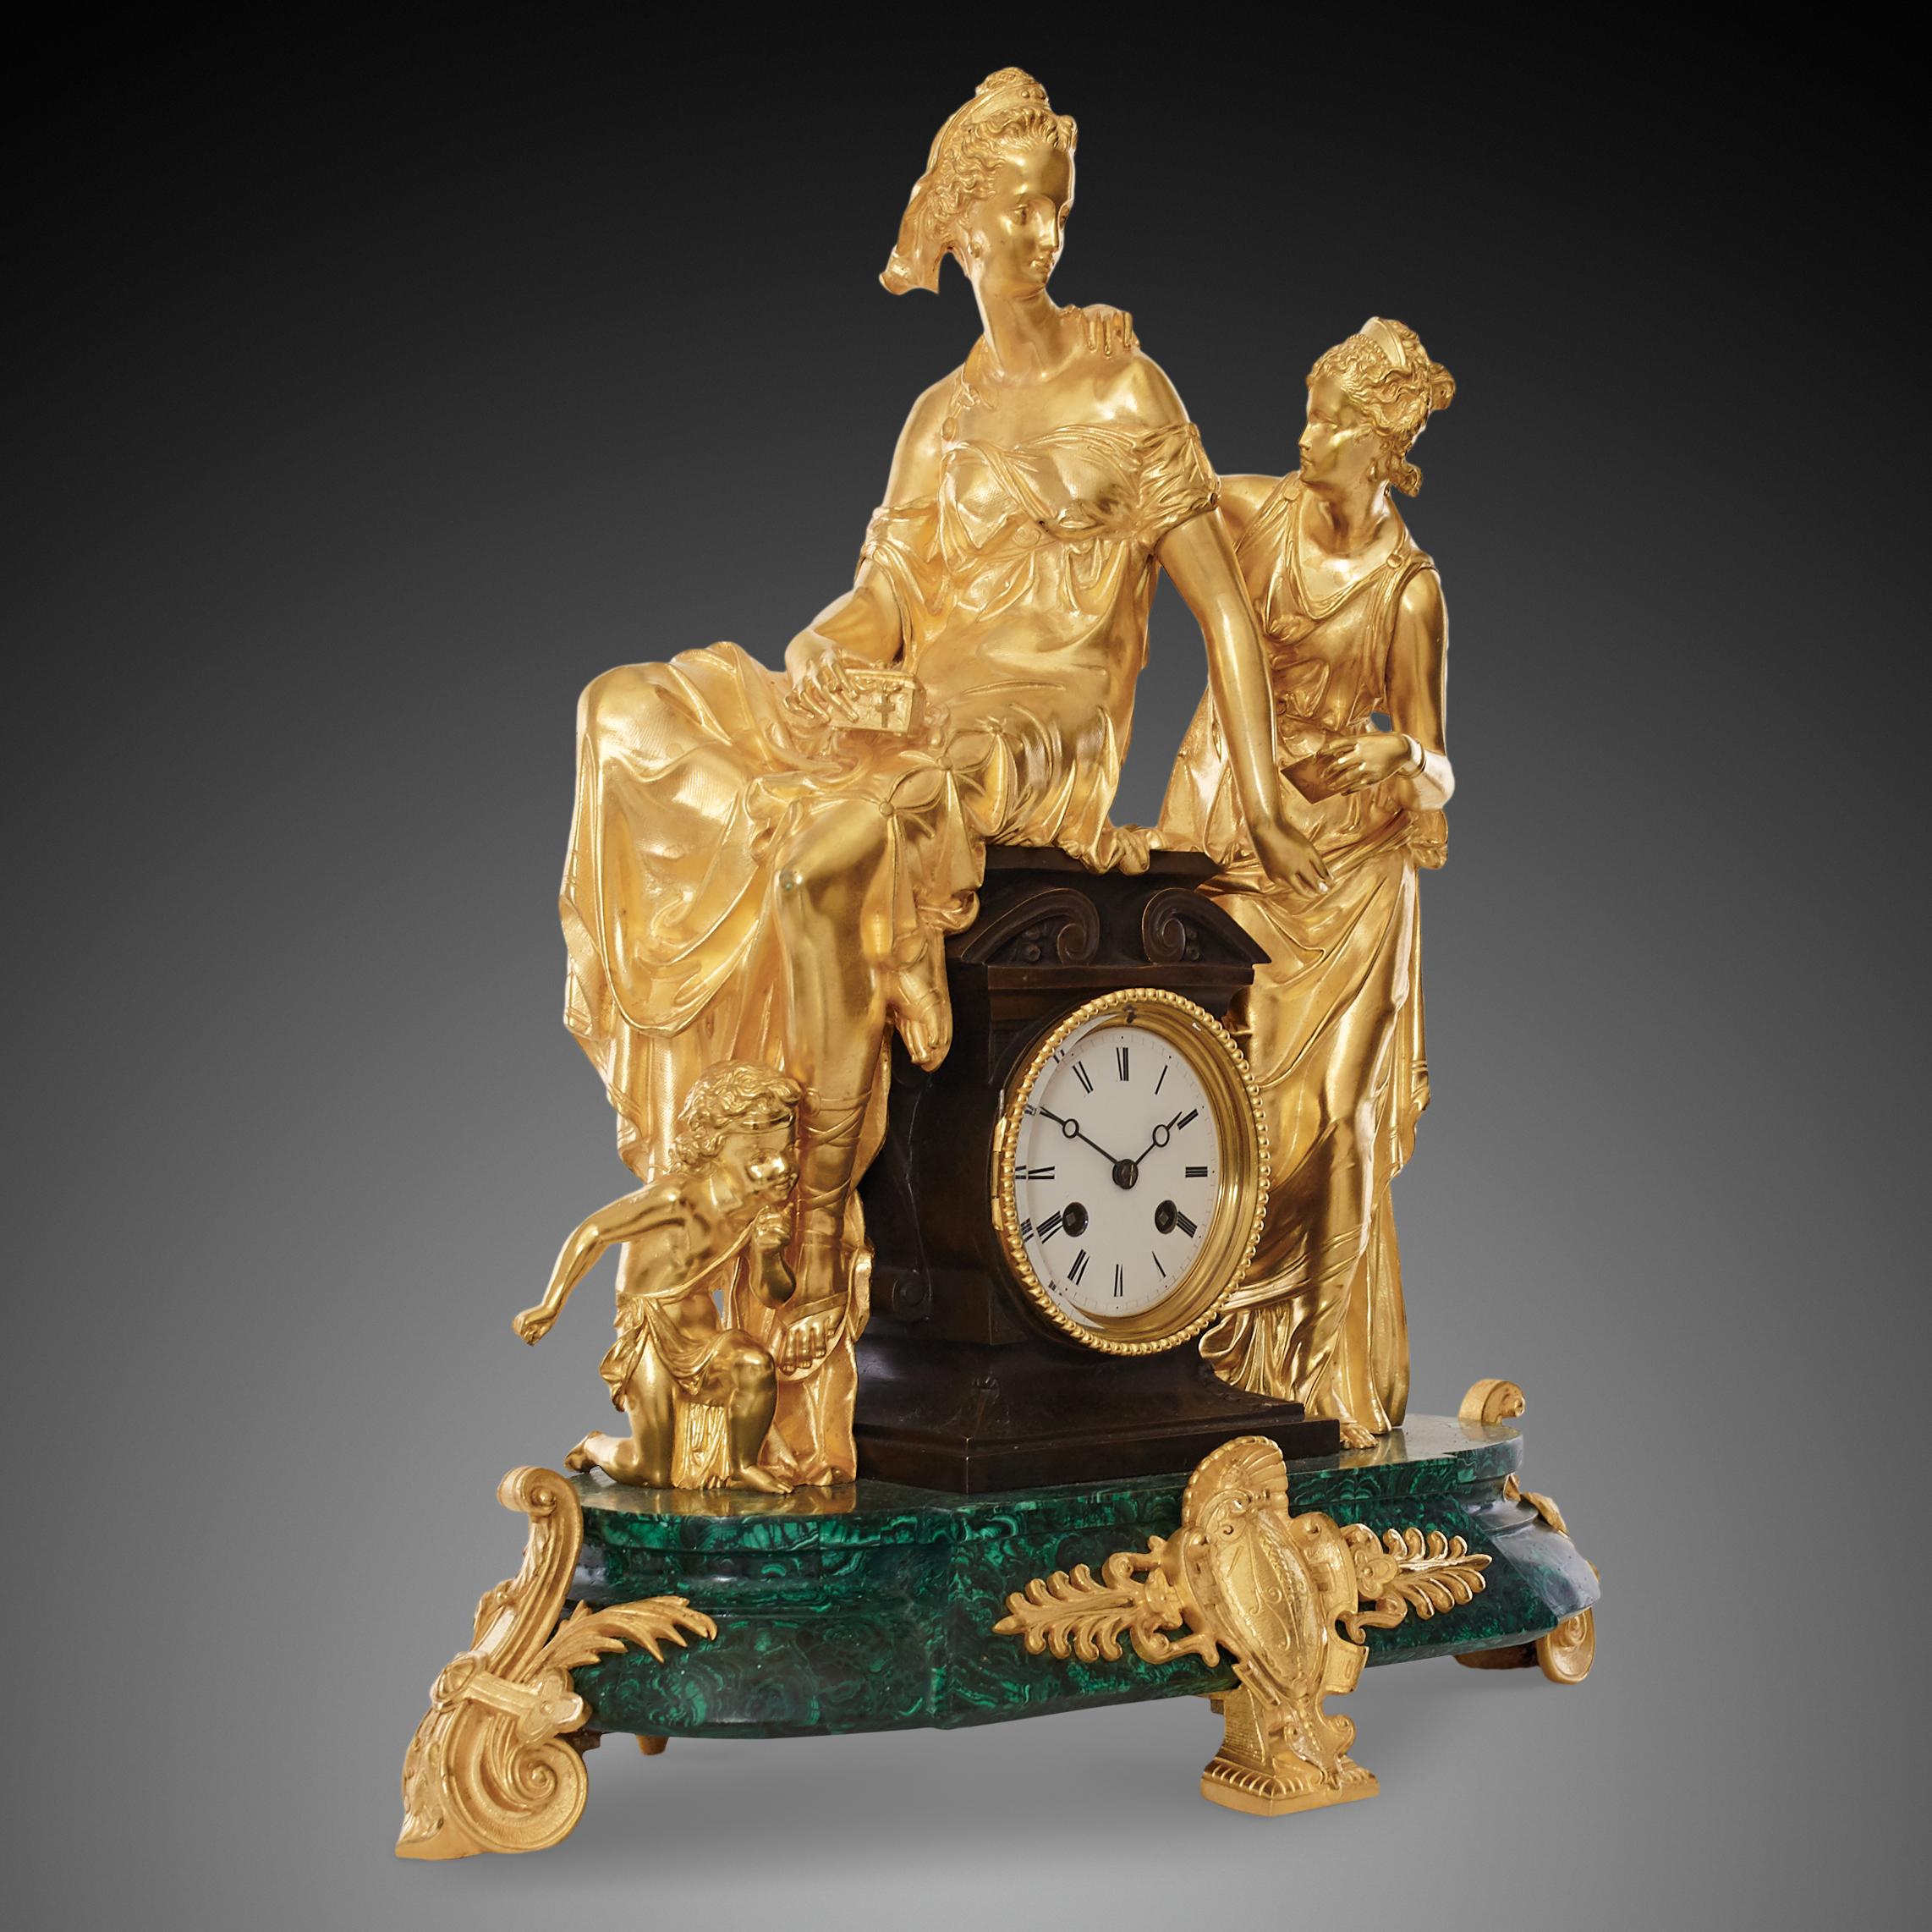 Pendule de style néoclassique de la fin du 19e siècle en bronze doré, avec un socle en malachite turquoise et en bronze doré. Le boîtier de la pendule en malachite est soutenu par des pieds en toupie en bronze doré, très courants à cette époque. Le